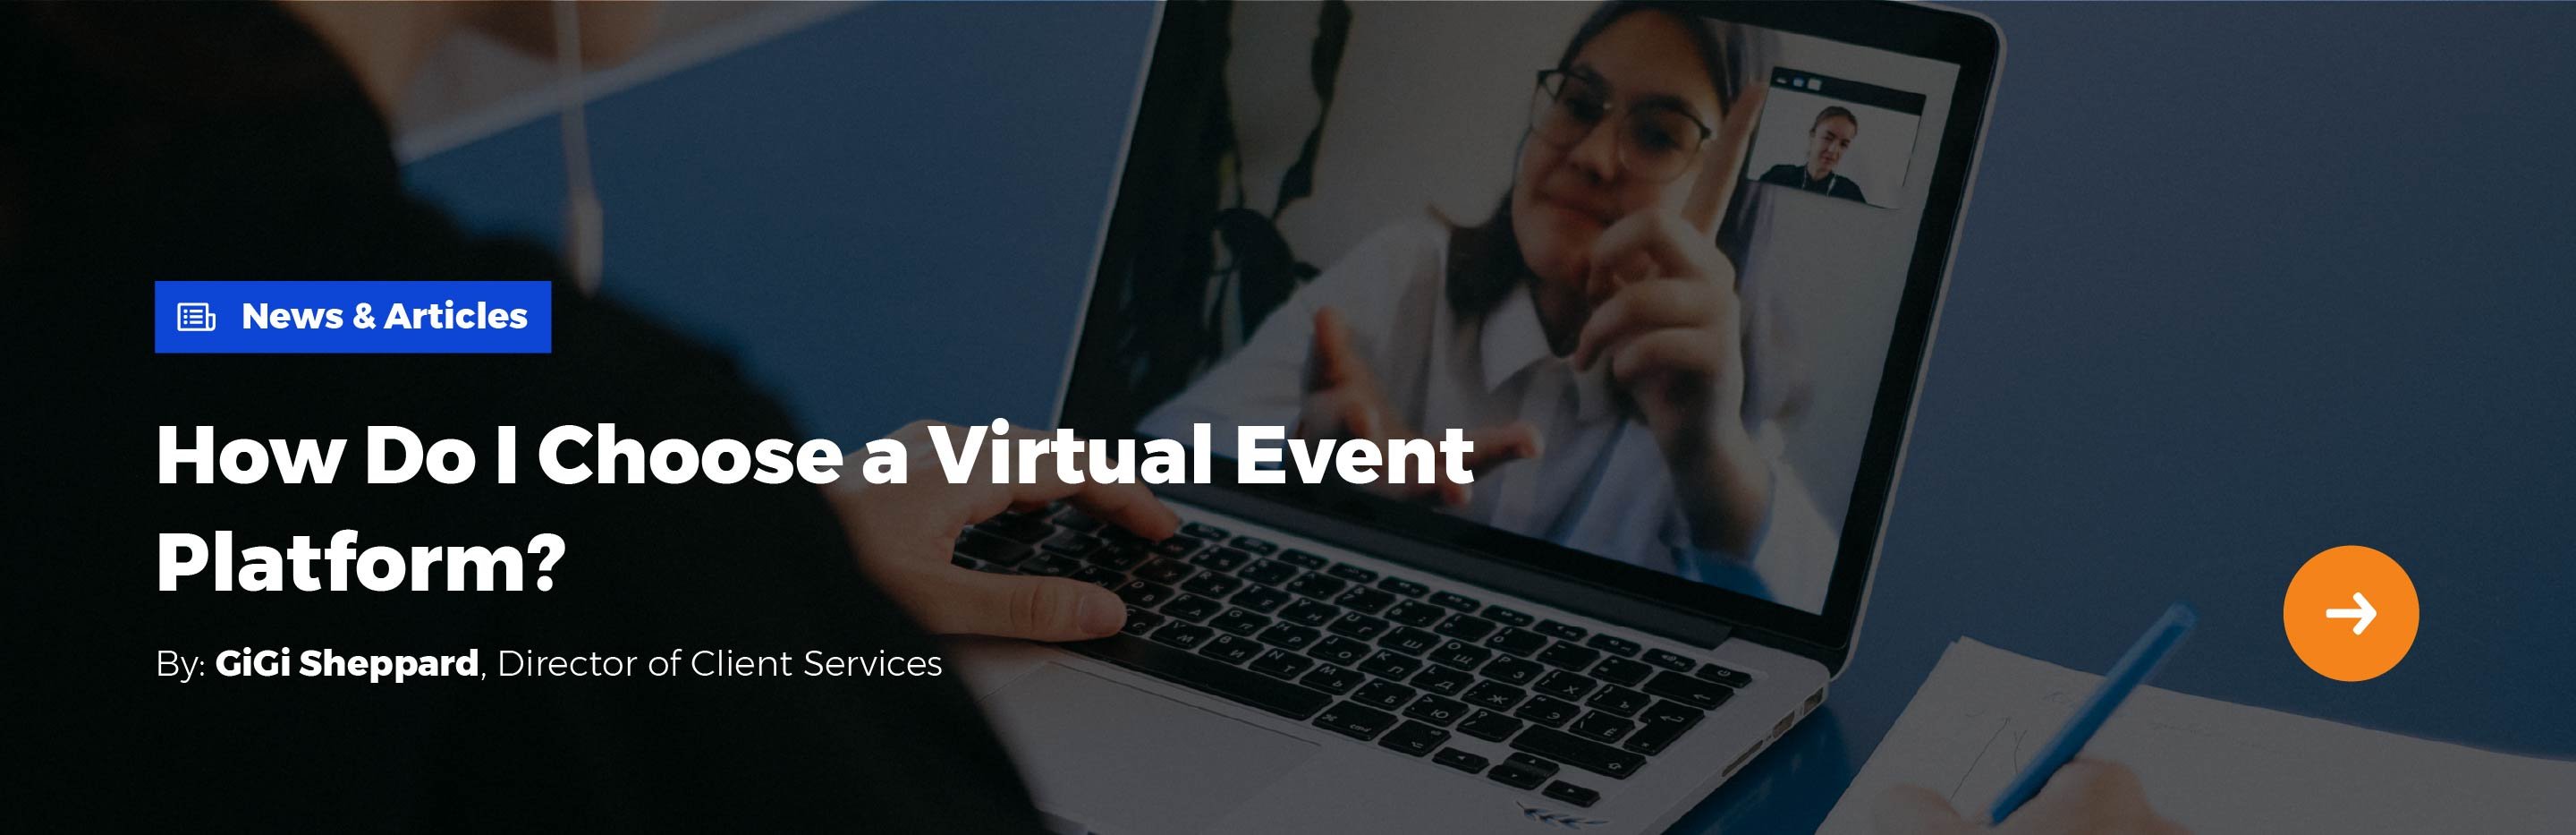 News & Articles: How Do I Choose a Virtual Event Platform?